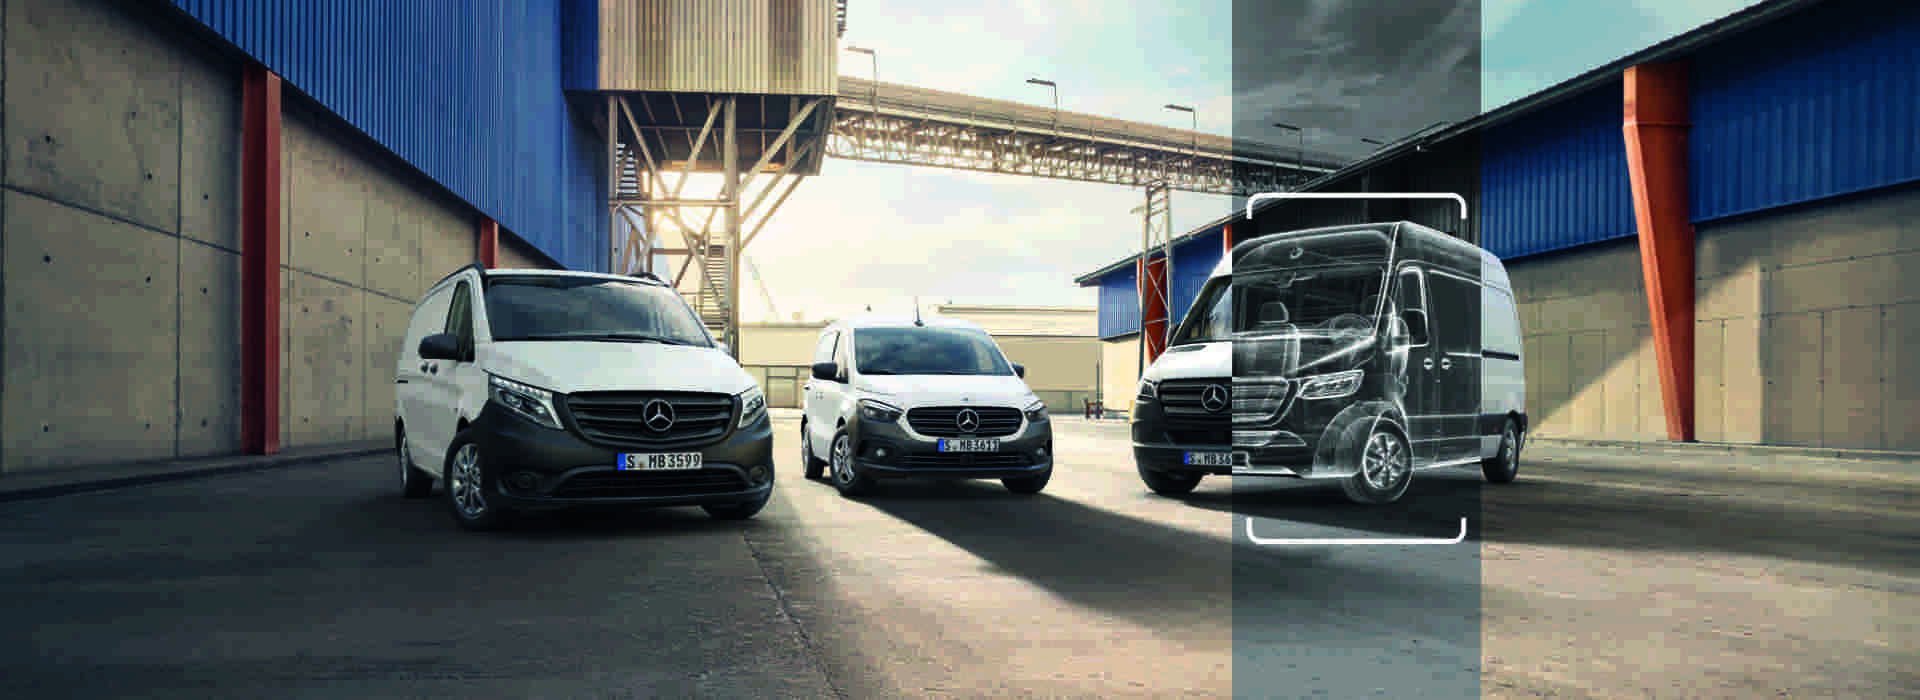 Mercedes-Benz Vito, Citan und Sprinter auf Werksgelände